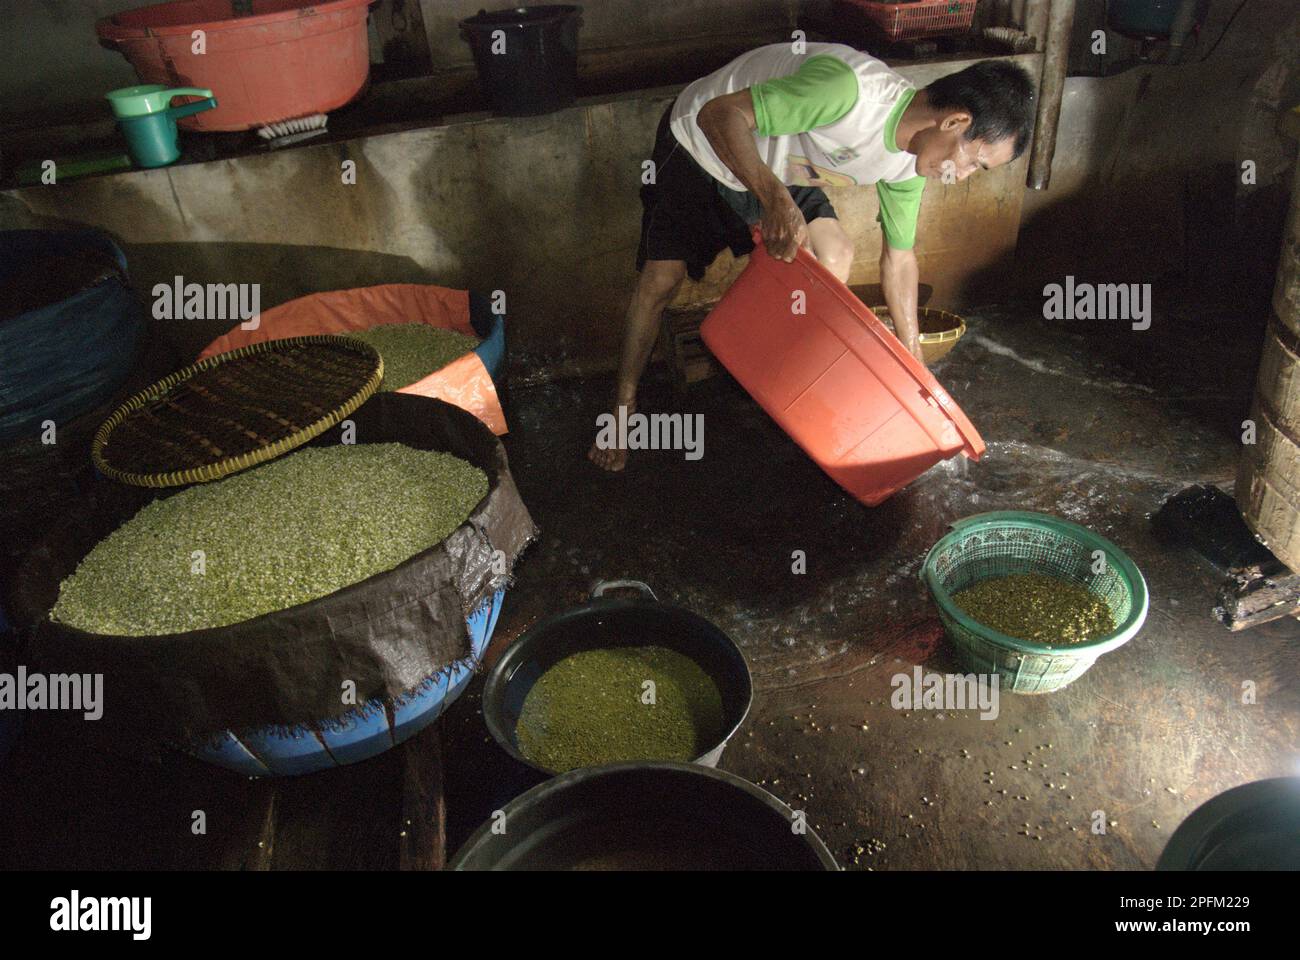 Un travailleur vidange l'excès d'eau d'un seau en plastique où les haricots mung sont placés dans une ferme de gerbes, une industrie urbaine de Jakarta, en Indonésie. Banque D'Images